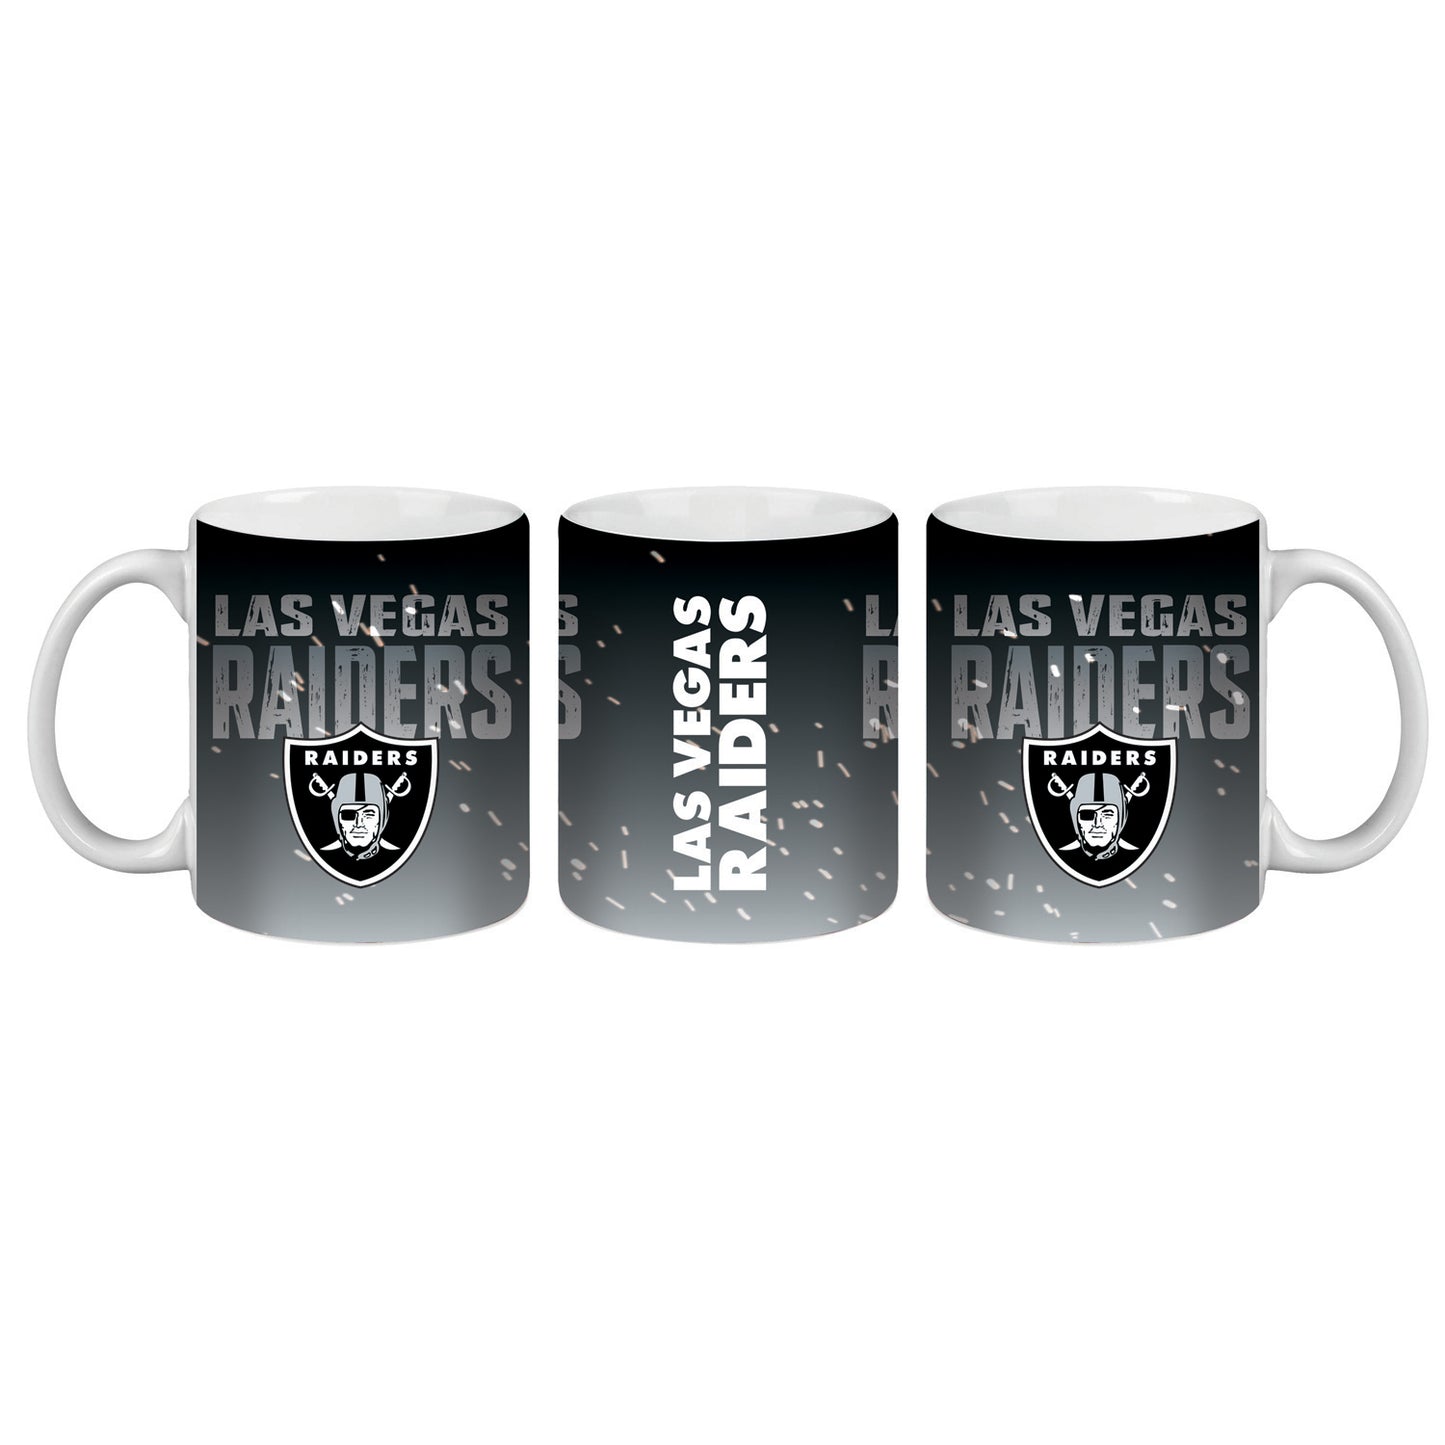 Las Vegas Raiders Mug and Key FOB Set